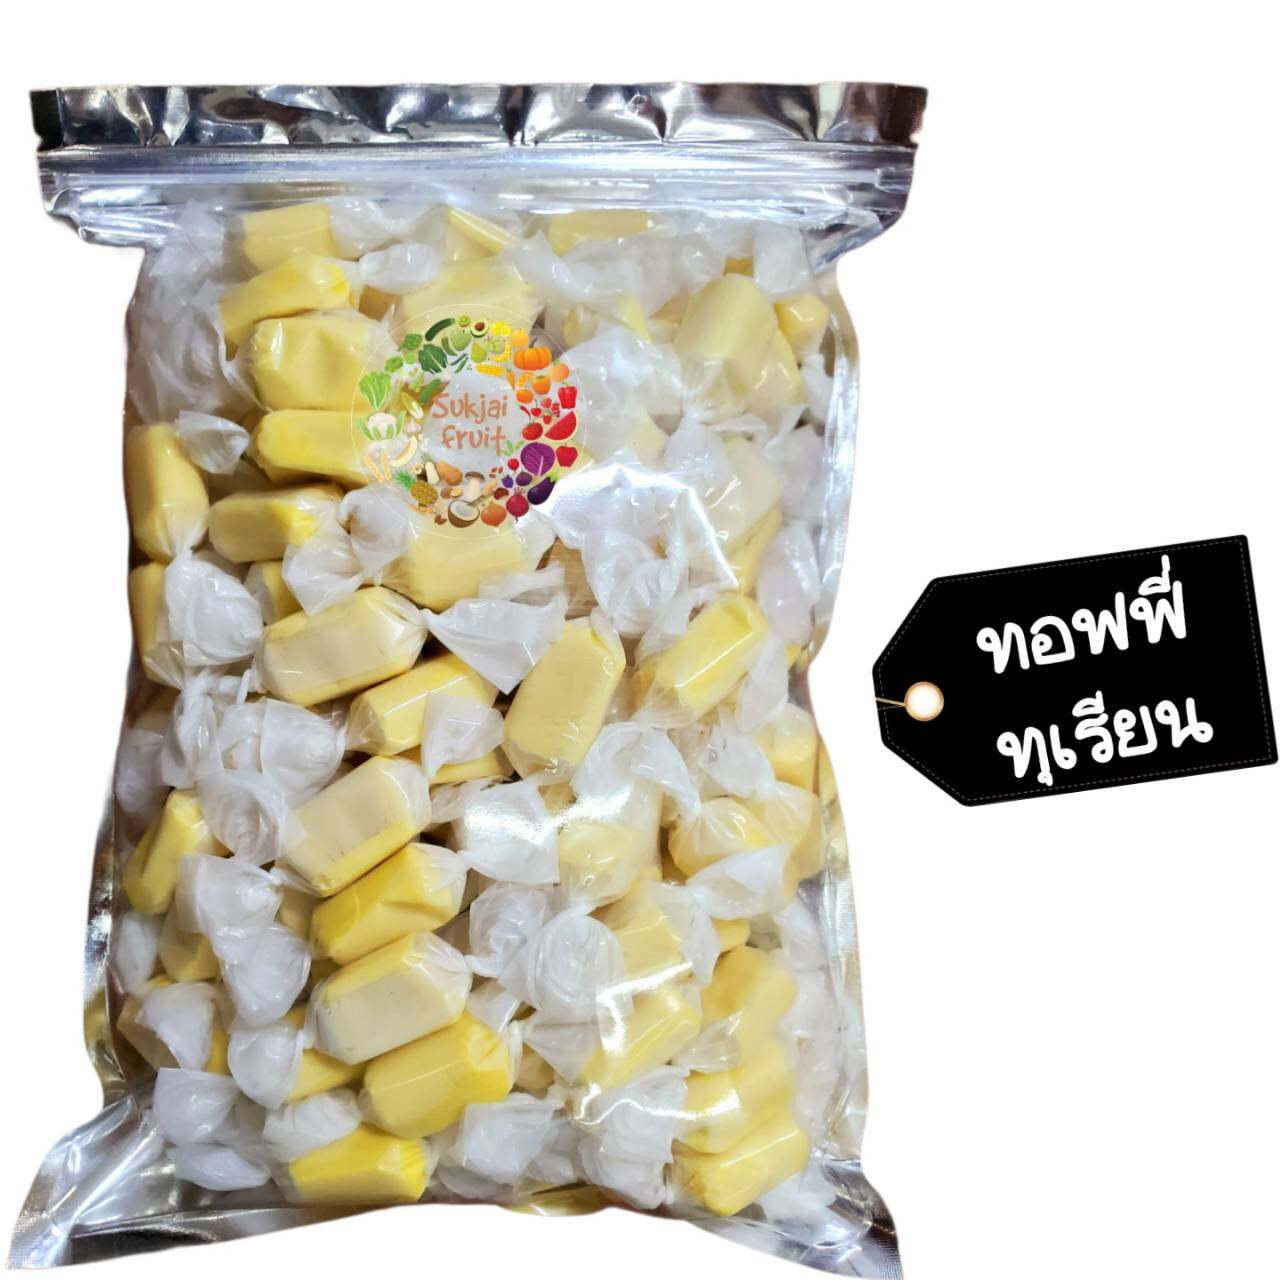 ทอฟฟี่ ทุเรียน 1 กิโลกรัม - Durian milk toffy 1 kg  - Dried fruit ผลไม้ อบแห้ง ขนมไทย ขนม OTOP บ๊วย ผลไม้อบแห้ง ท๊อฟฟี่ ขนม ลูกอม